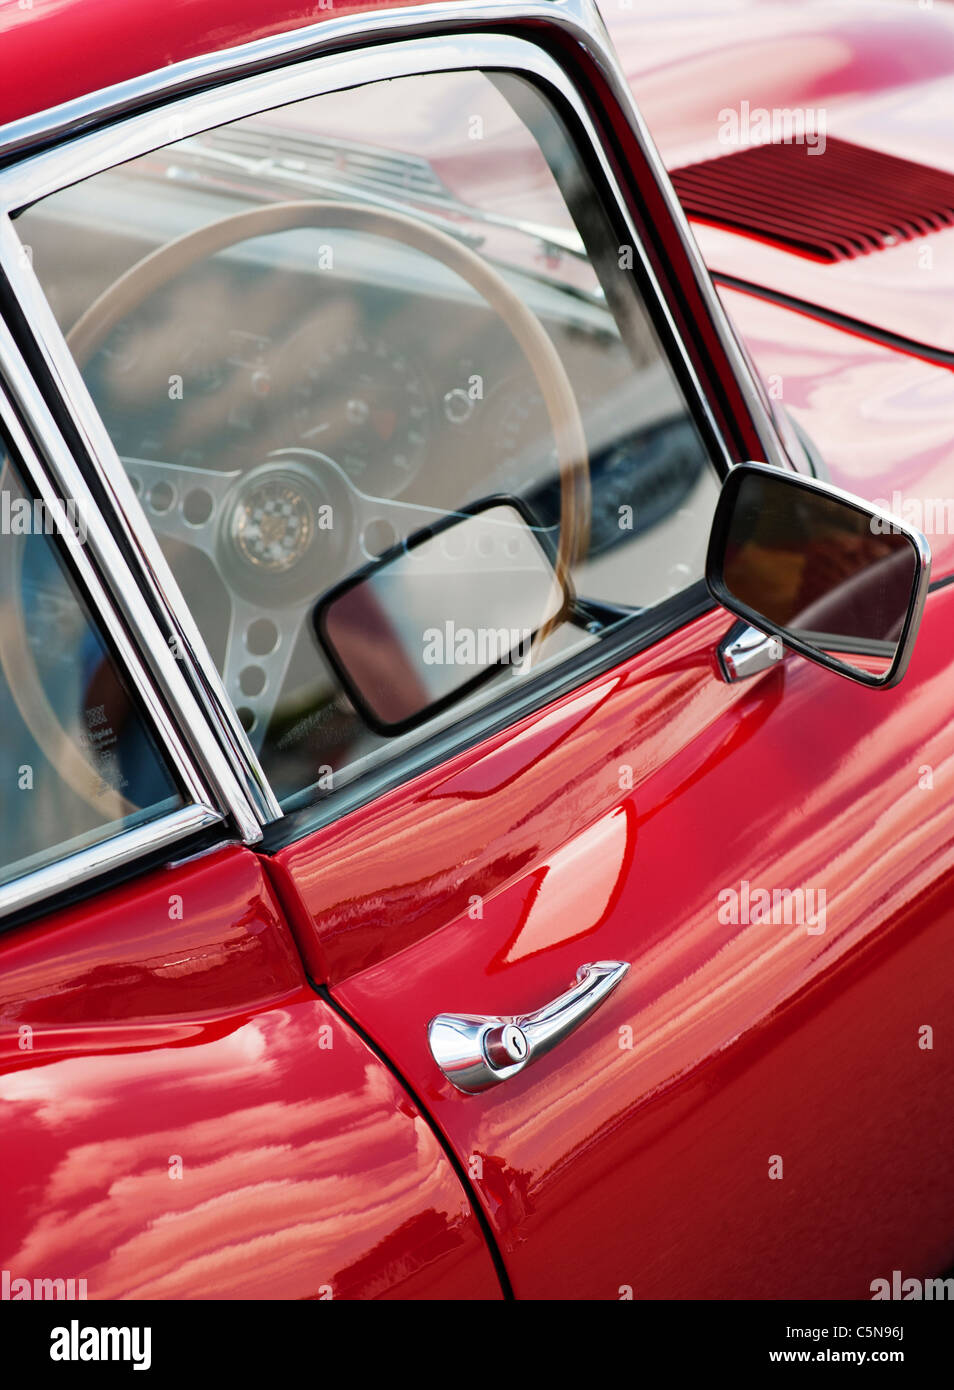 E Type Jaguar. Classic british sports car Stock Photo